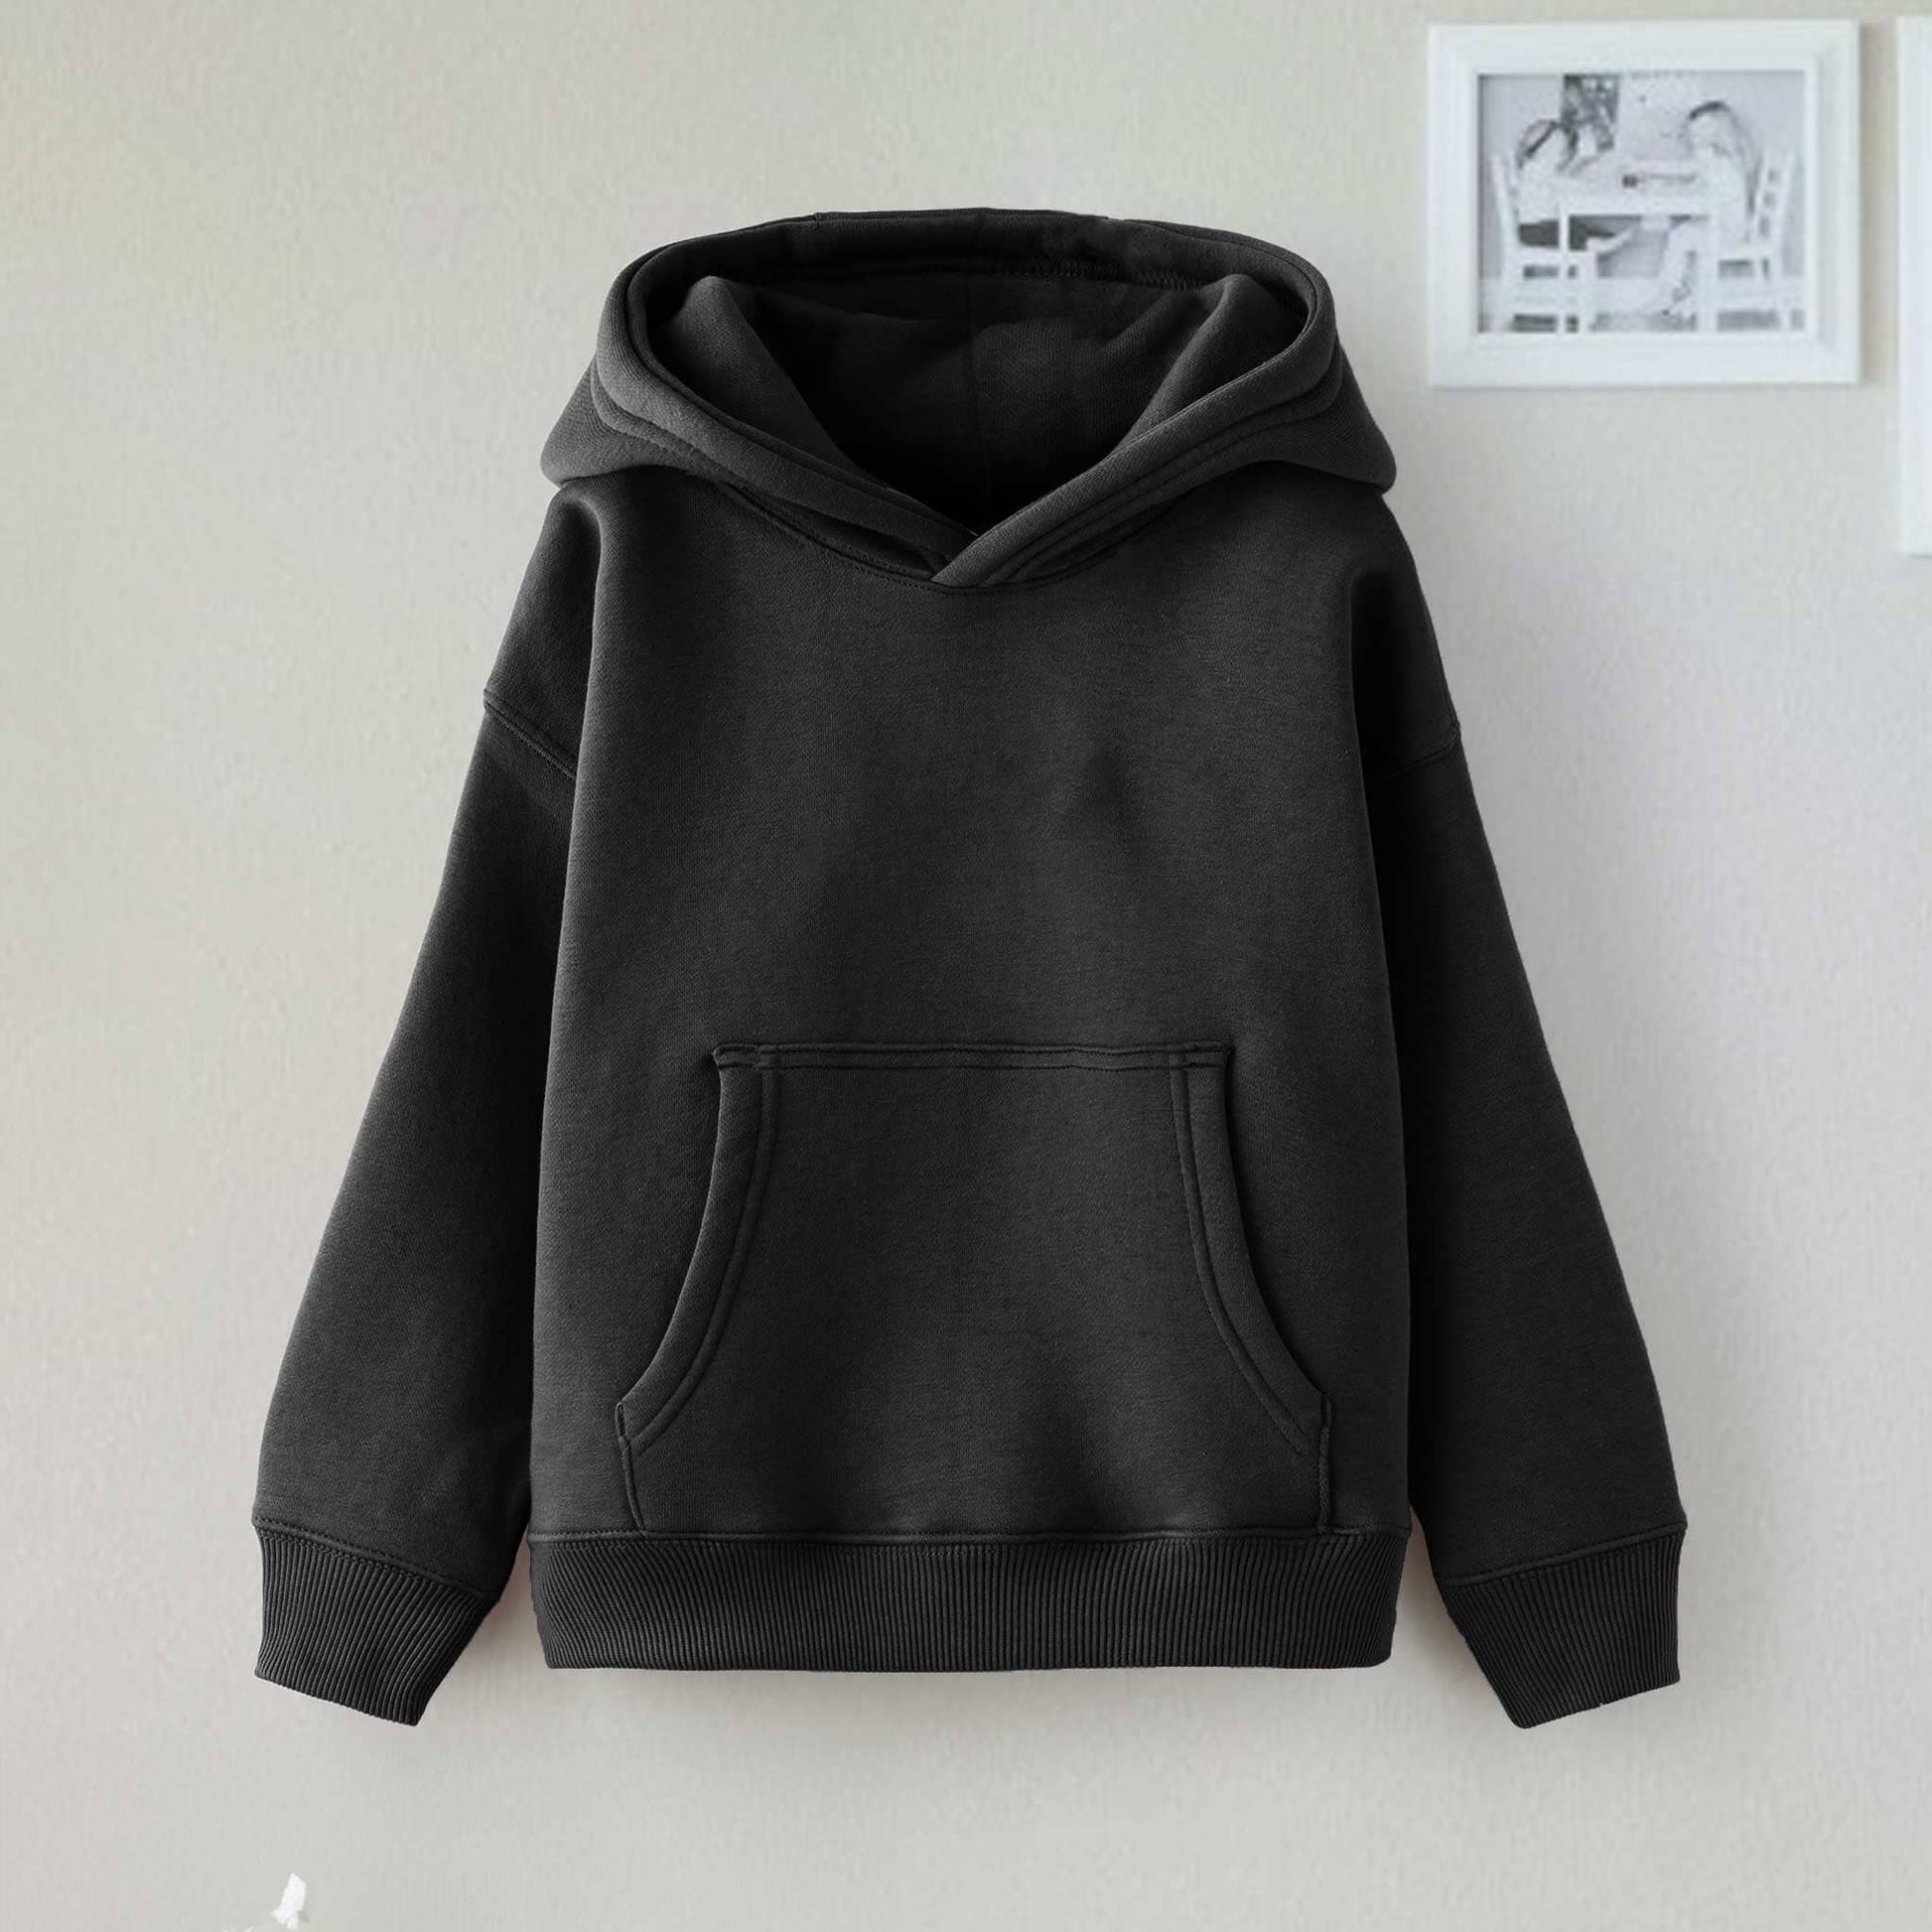 Dream Kid's Solid Design Long Sleeve Pullover Fleece Hoodie Boy's Pullover Hoodie Minhas Garments Black 2-3 Years 